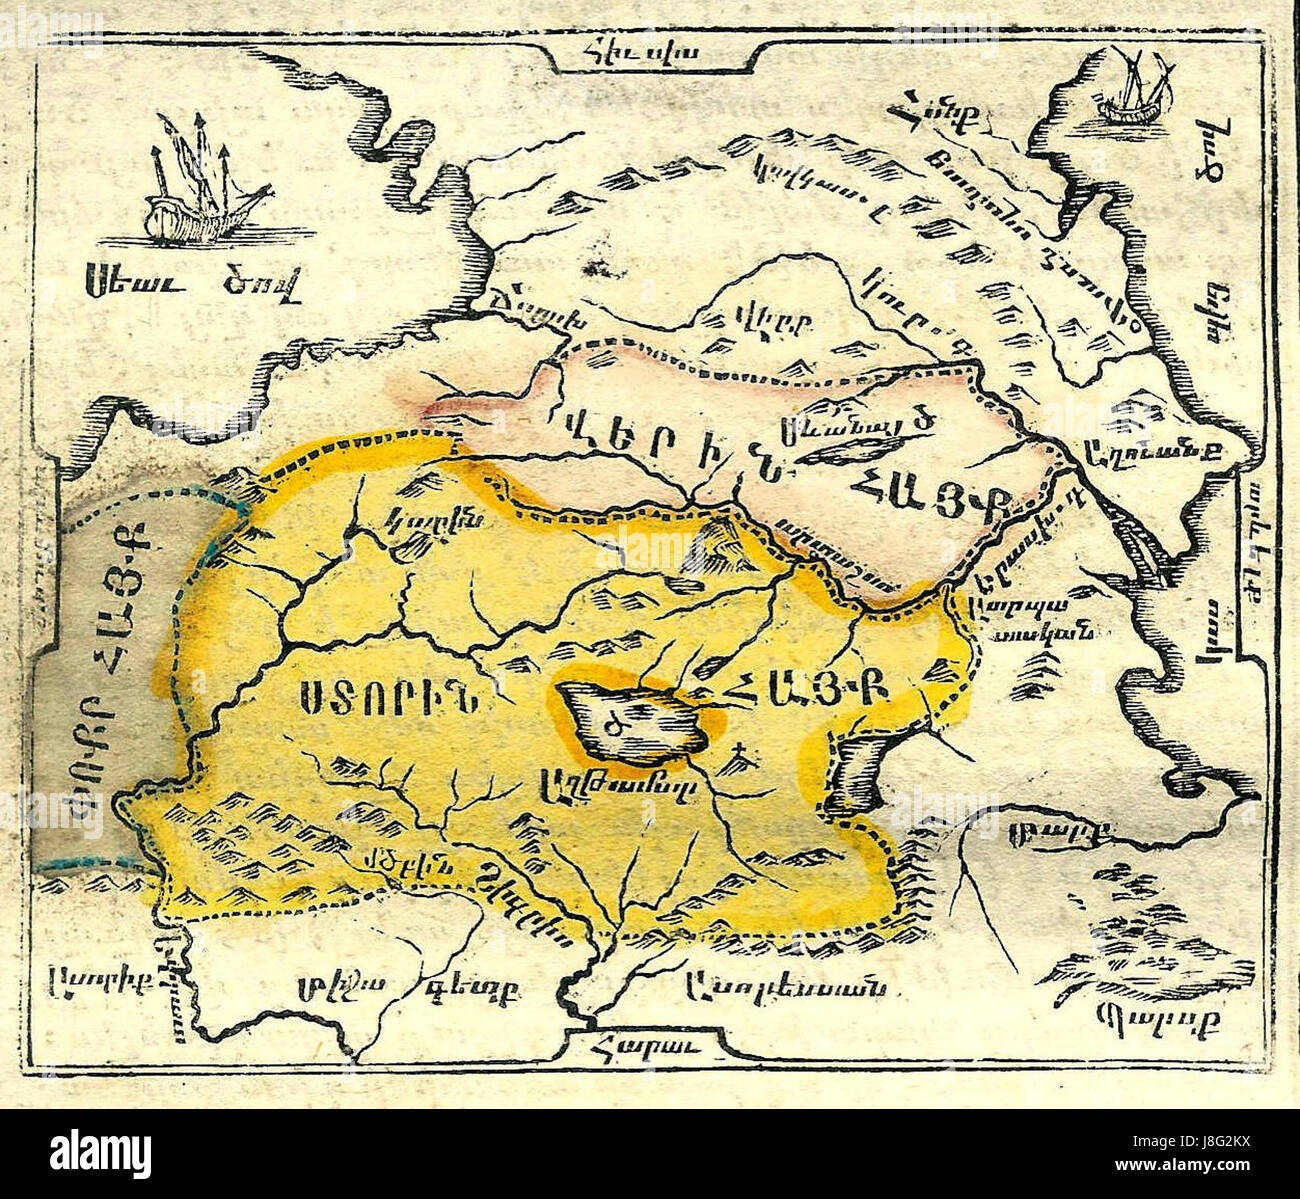 Map of Armenia from Chamchian's History of Armenia, 1784 Stock Photo